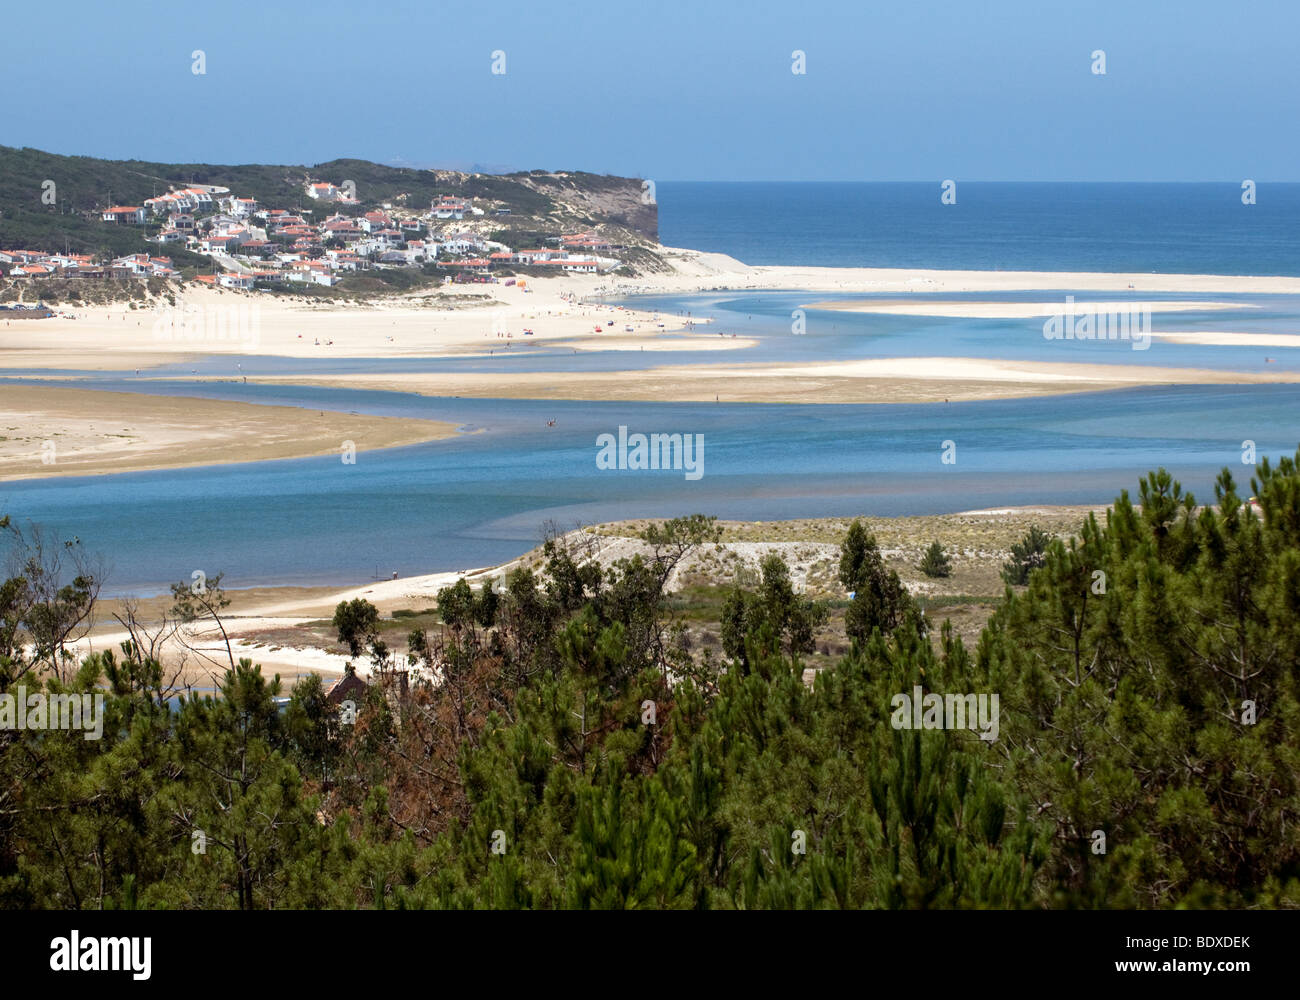 Il resort di Bom Sucesso, su cui si affaccia la bocca della laguna di Óbidos, in Portogallo Costa de Prata (Costa d'argento) Foto Stock